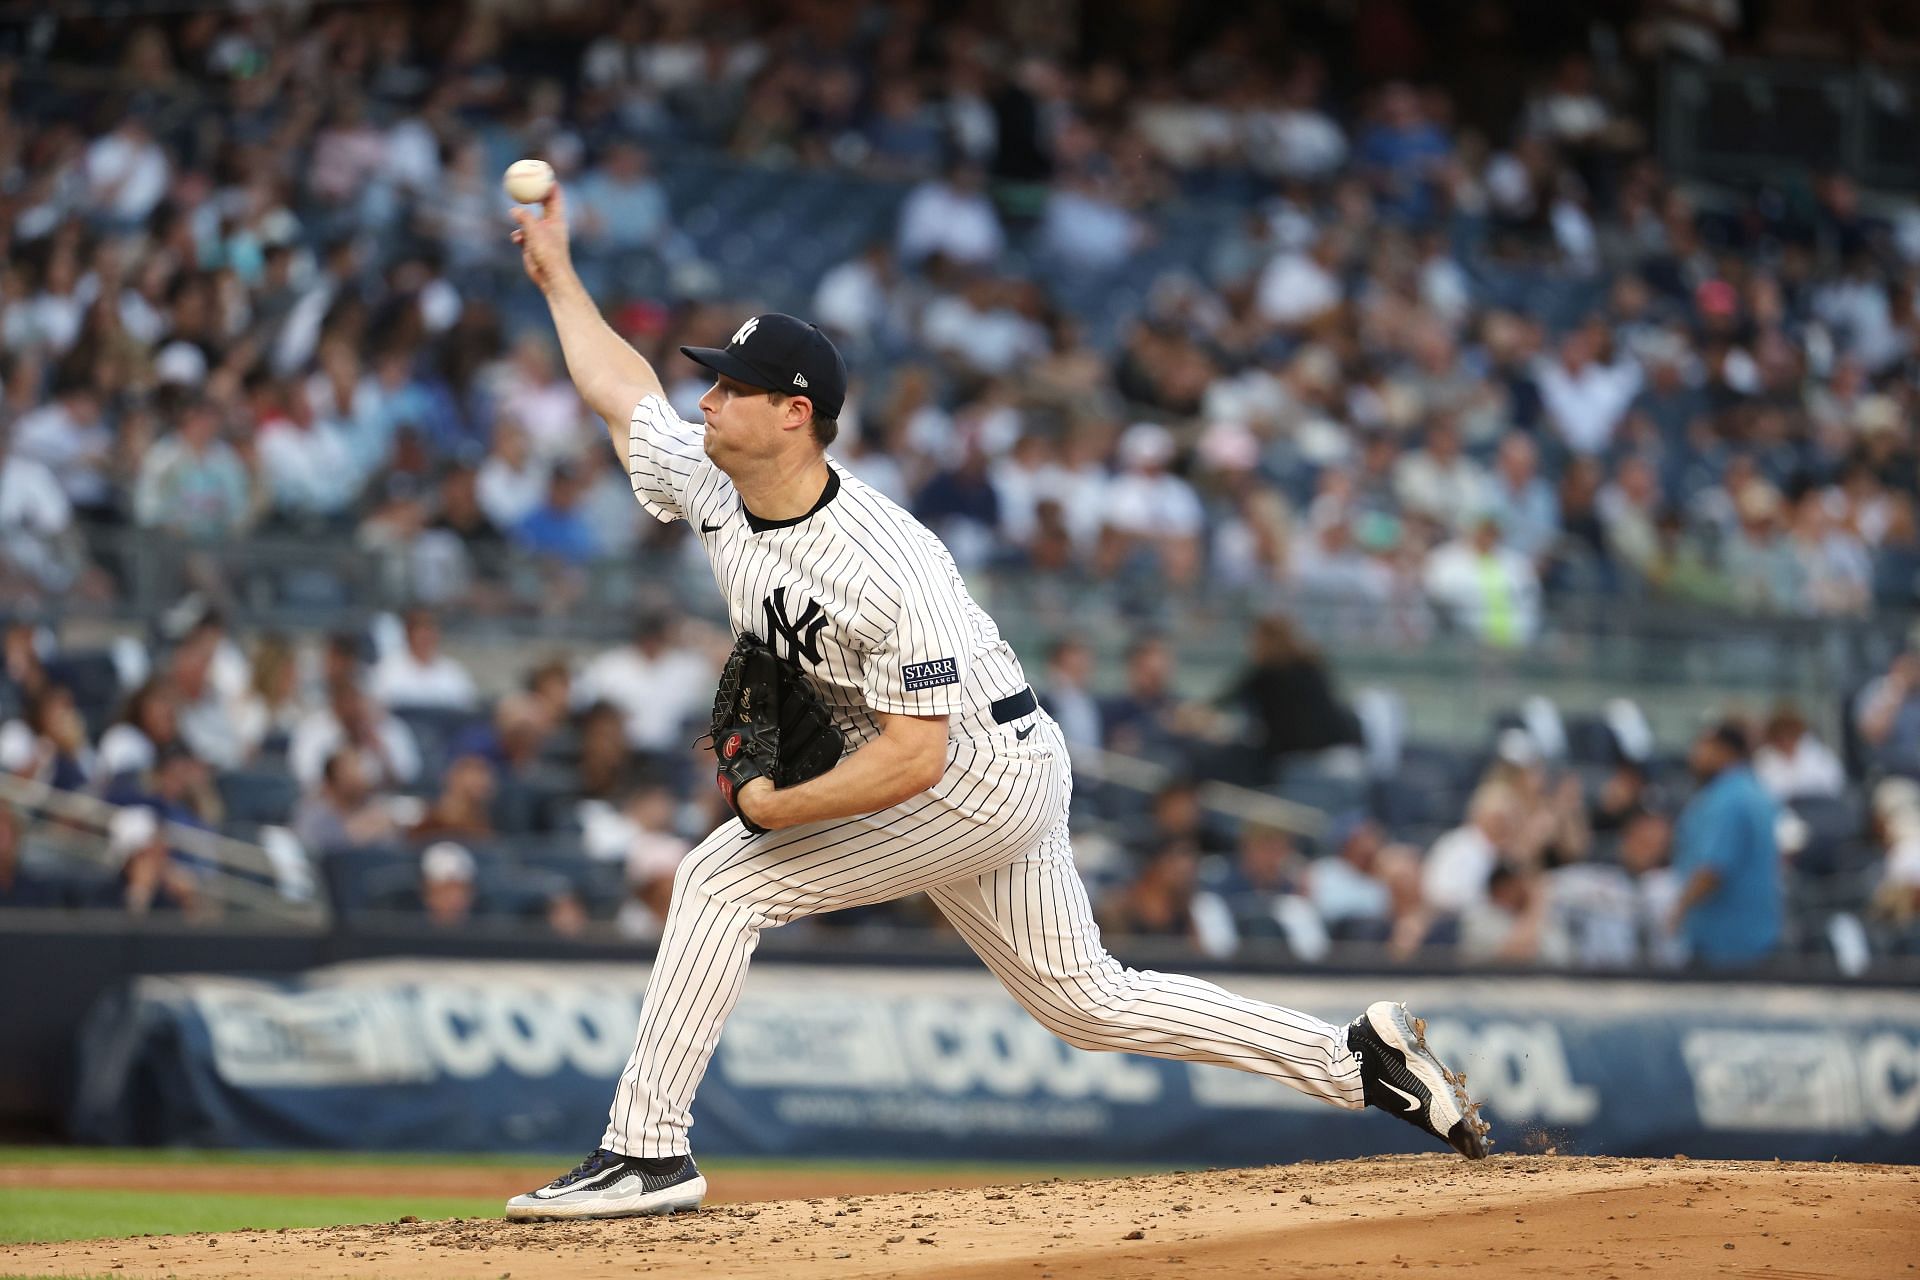 Yankees Gerrit Cole (Image via Getty)